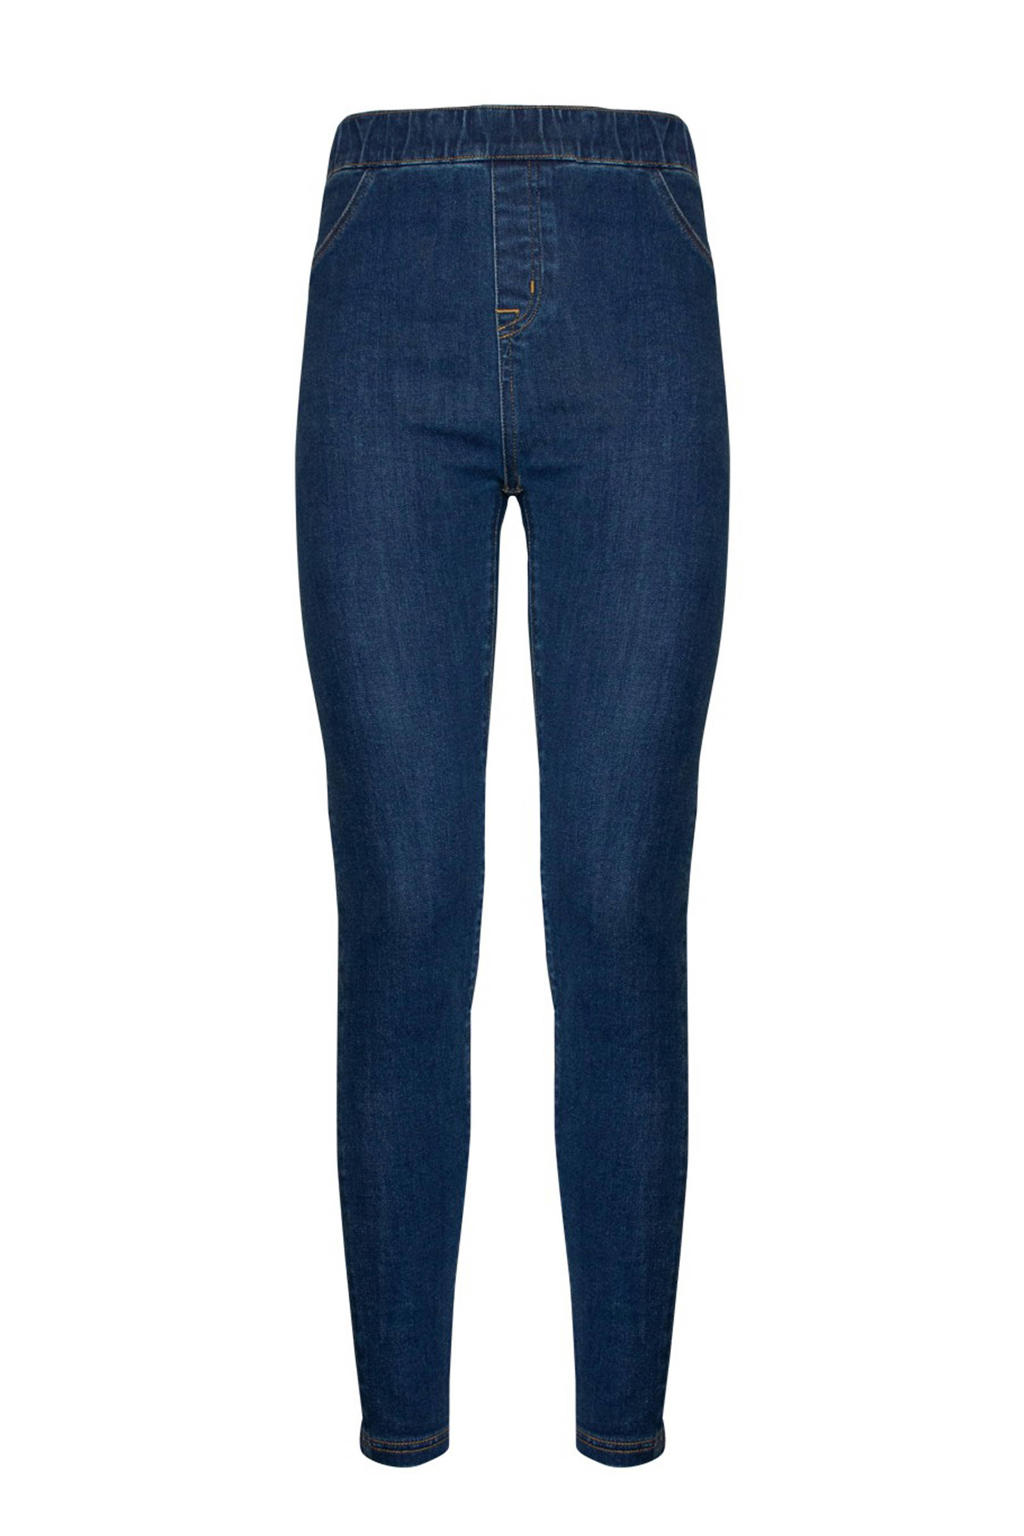 Blauwe dames MAGIC Bodyfashion corrigerende jegging jeans van stretchdenim met slim fit, high waist en elastische tailleband